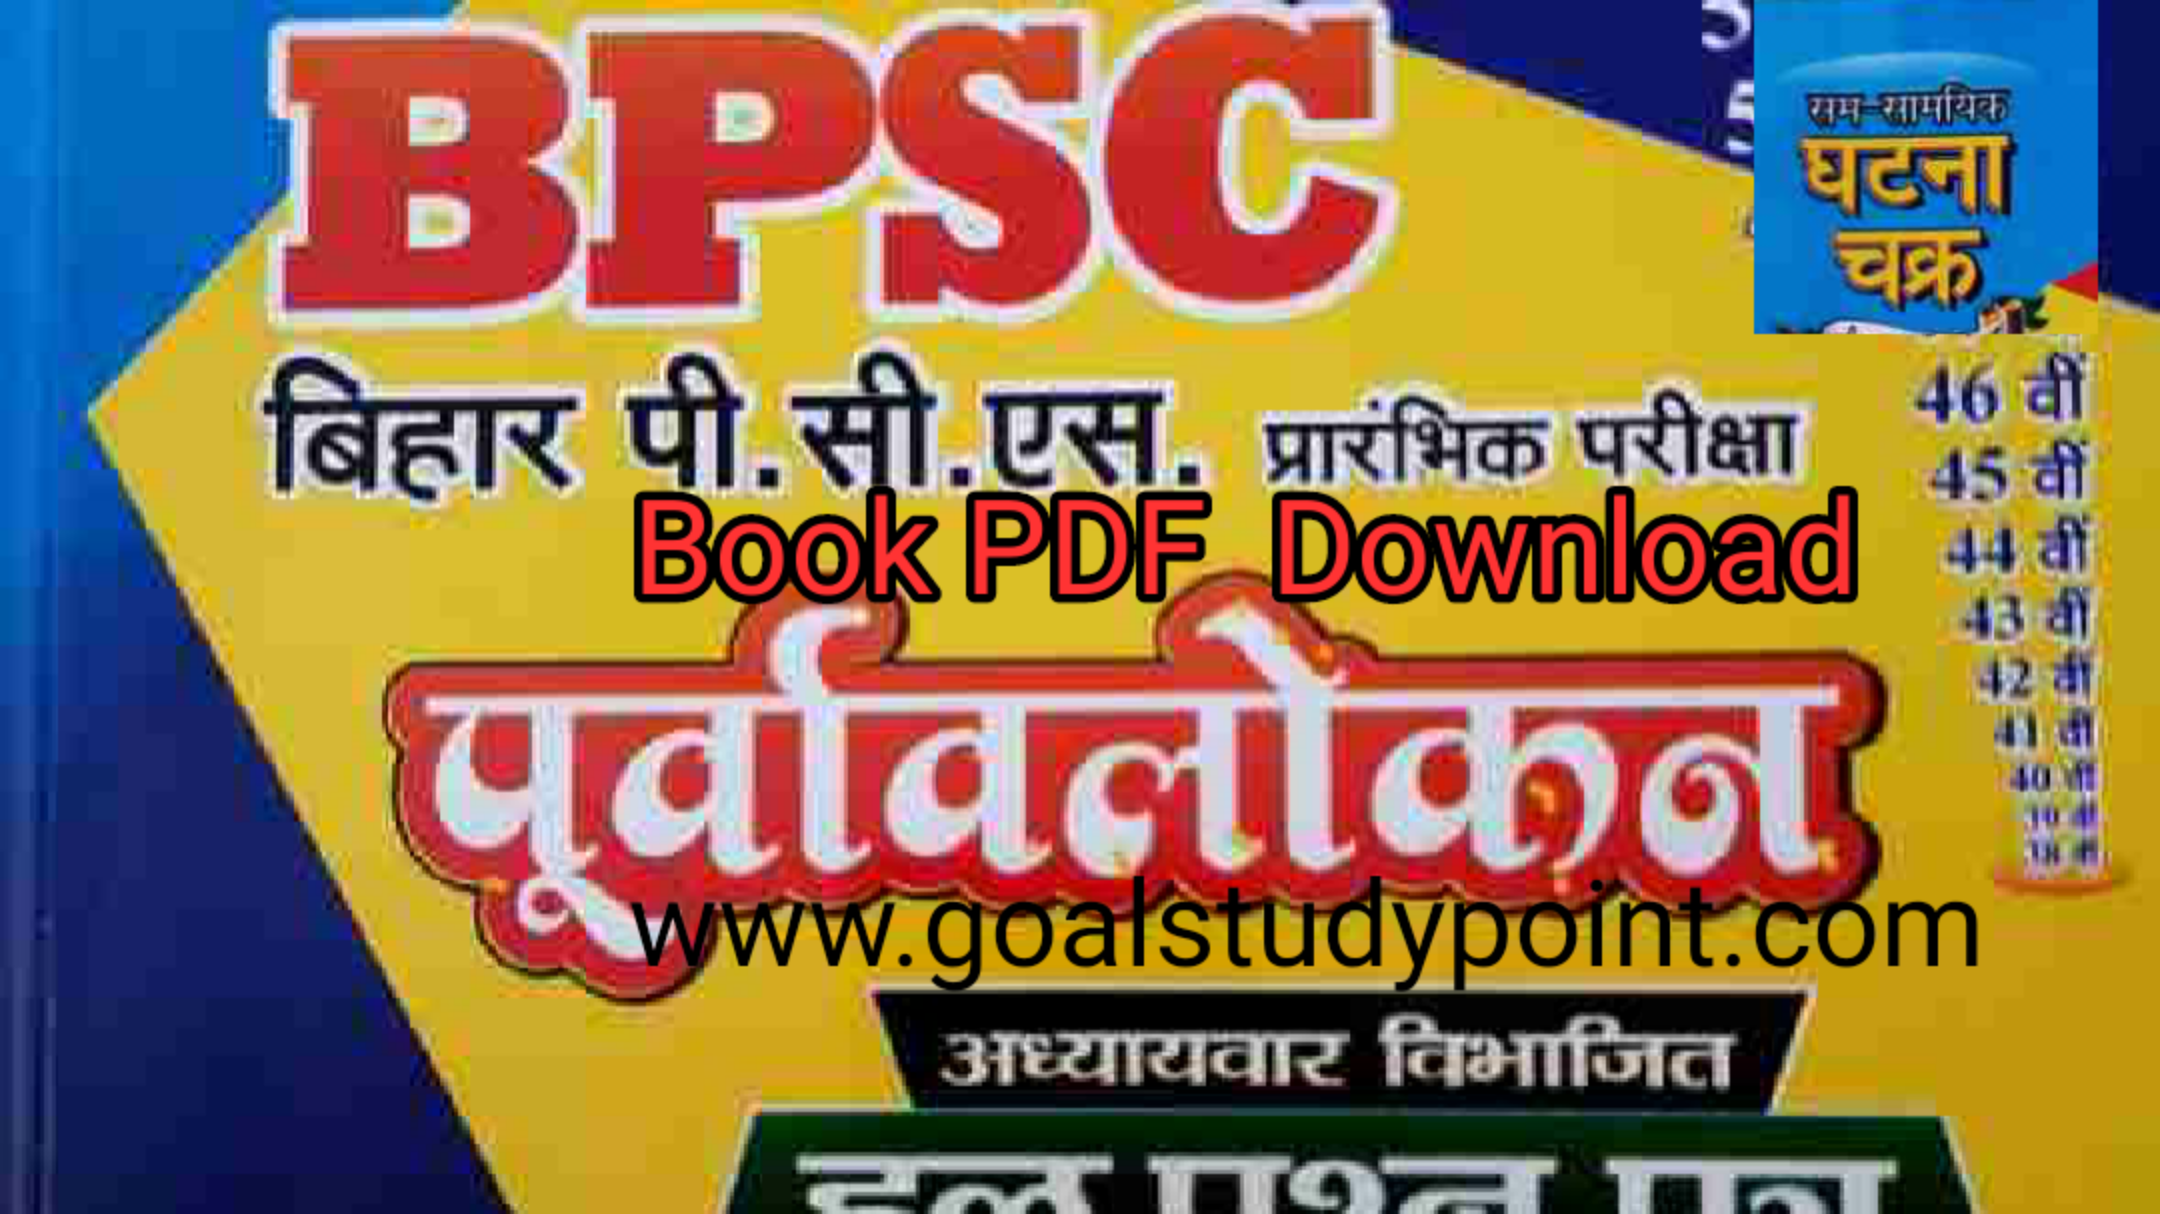 Drishti IAS Bihar Special Current Affairs Book PDF